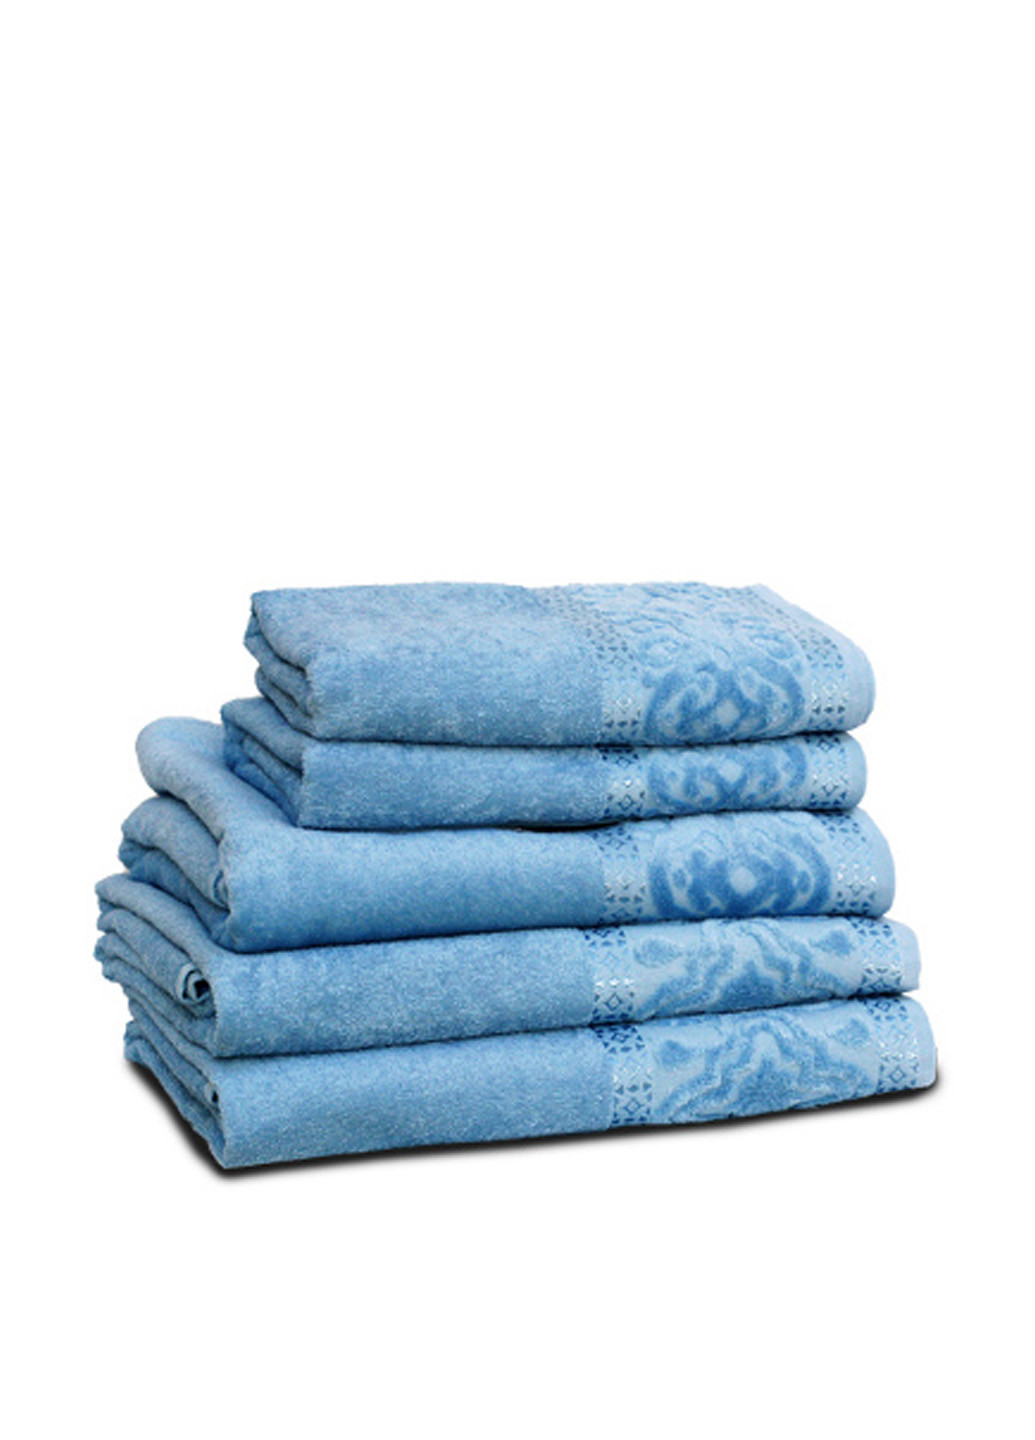 Home Line полотенце, 70х140 см однотонный голубой производство - Турция